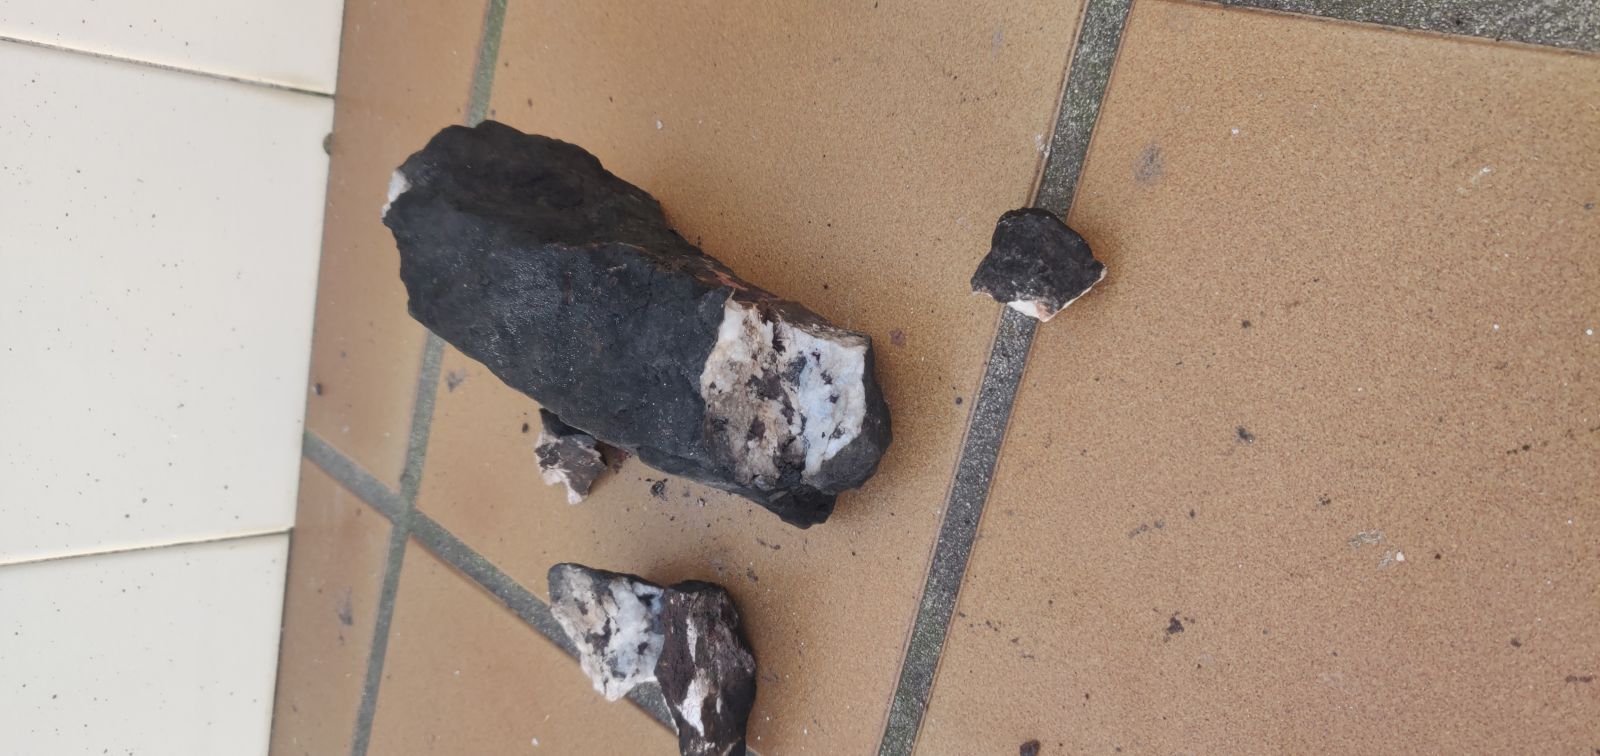 Carbrica - Sacos de carvão vegetal trazem pedras